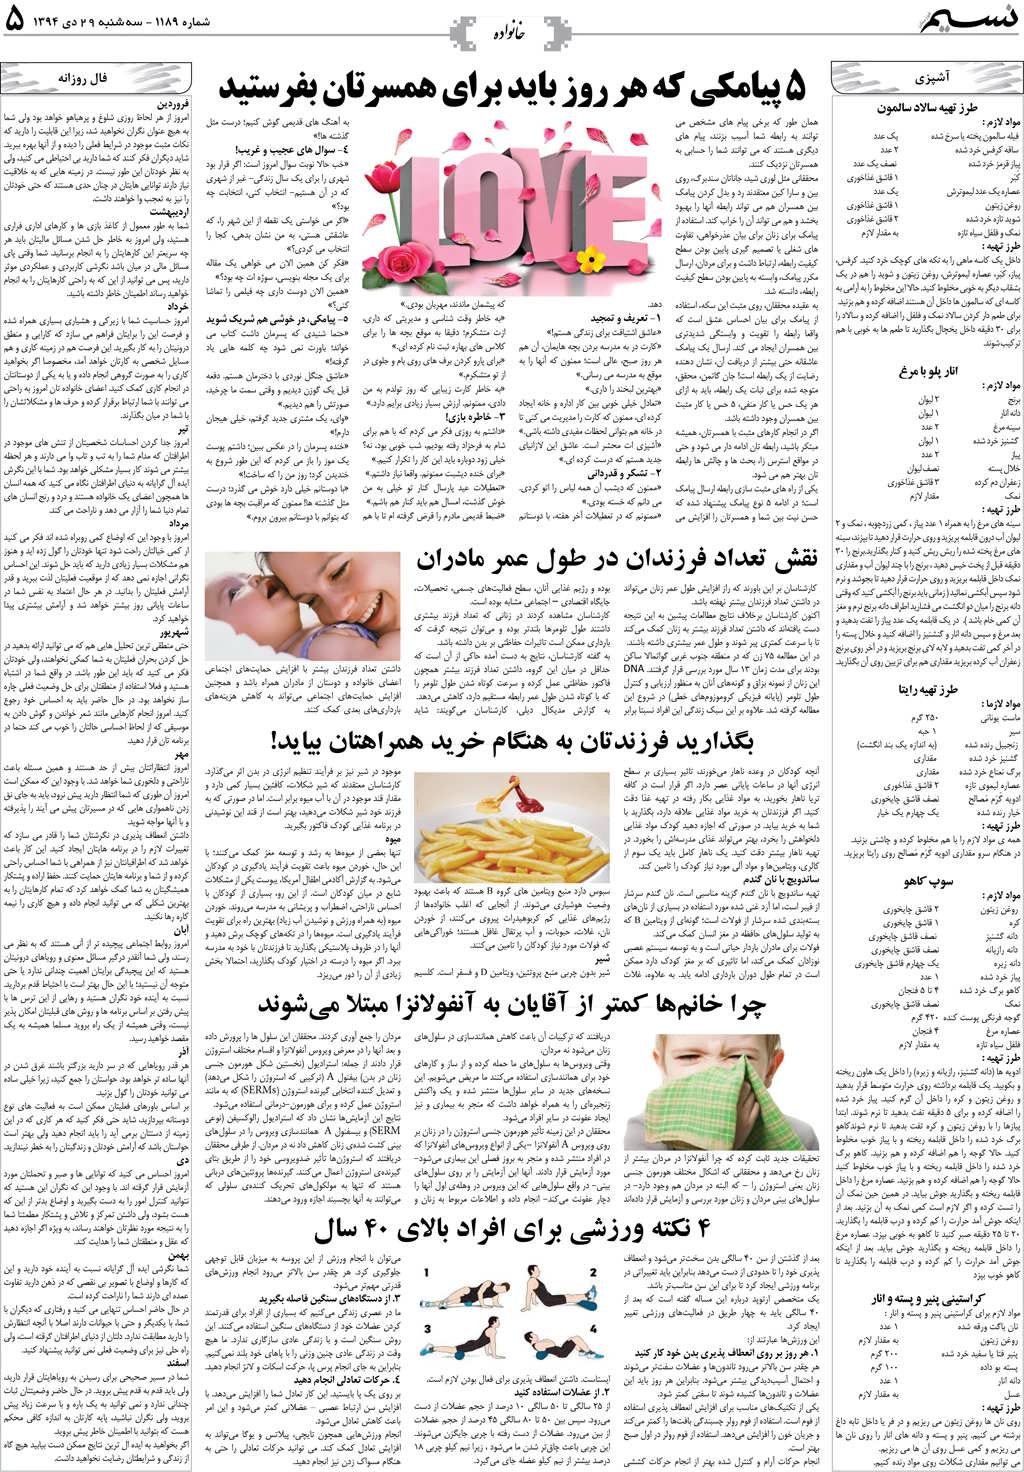 صفحه خانواده روزنامه نسیم شماره 1189